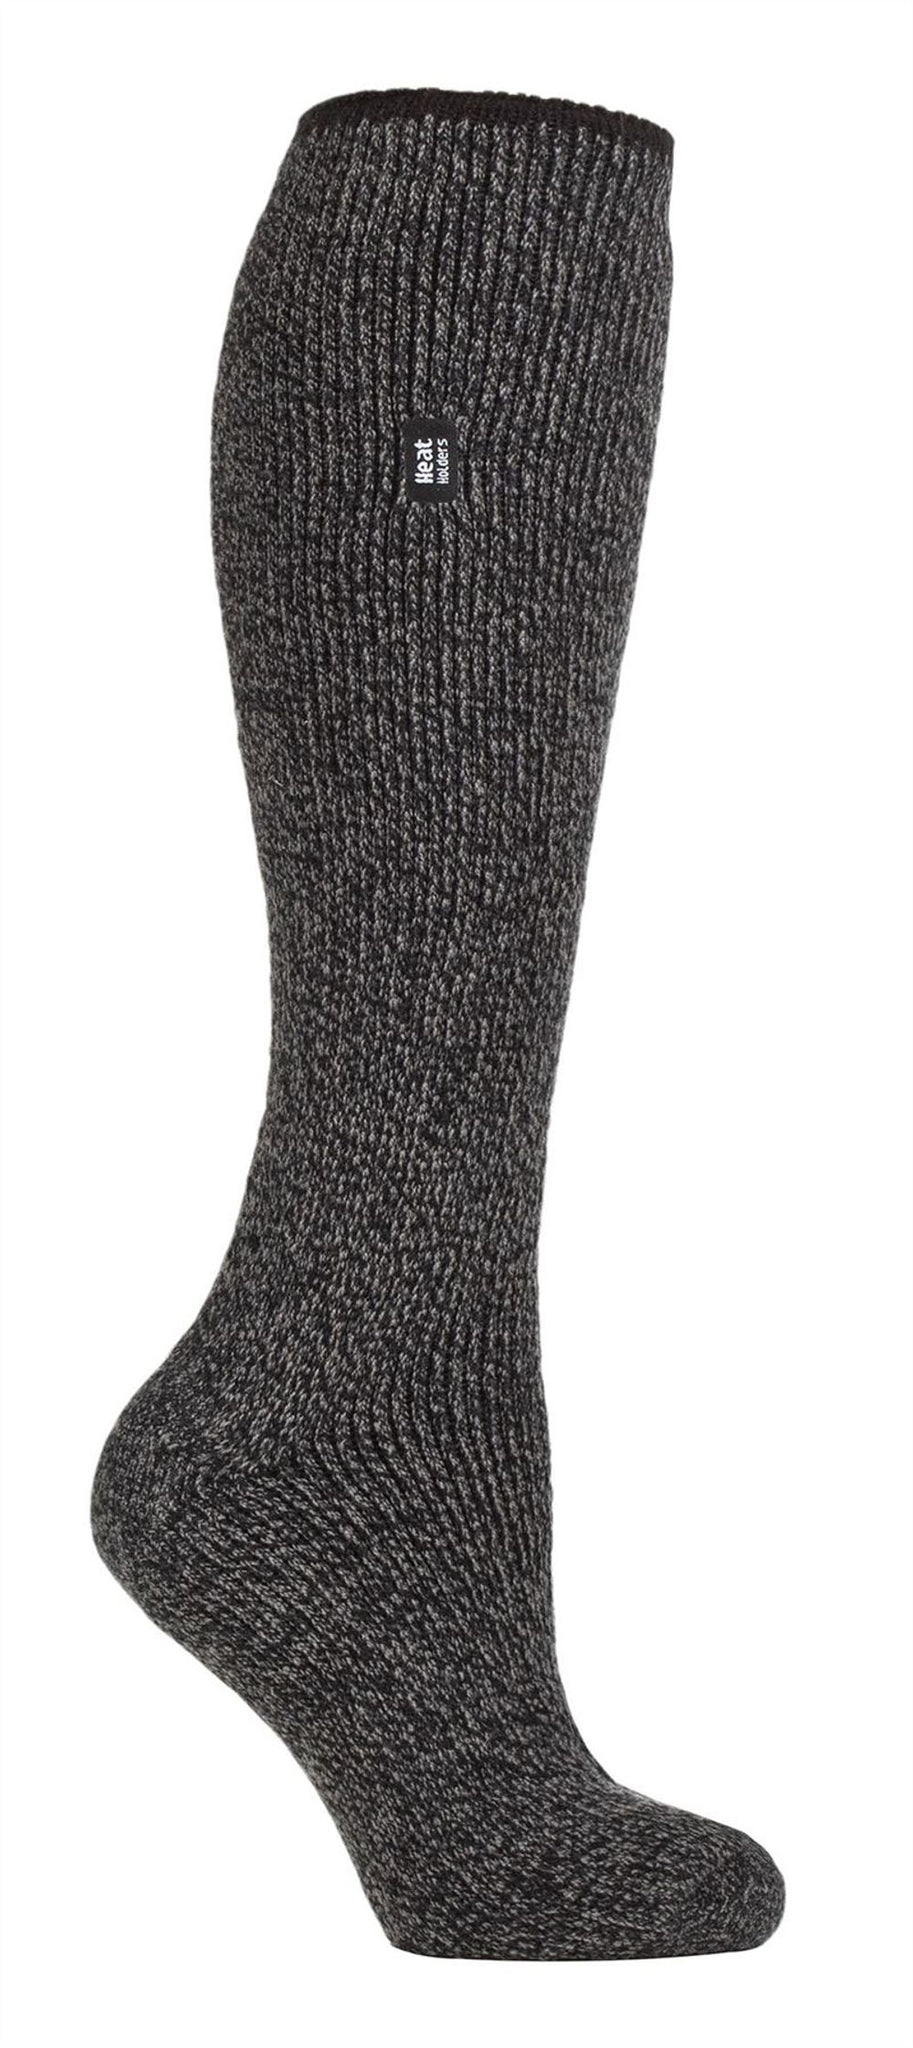 Heat Holders - Ladies LONG Merino Wool Socks